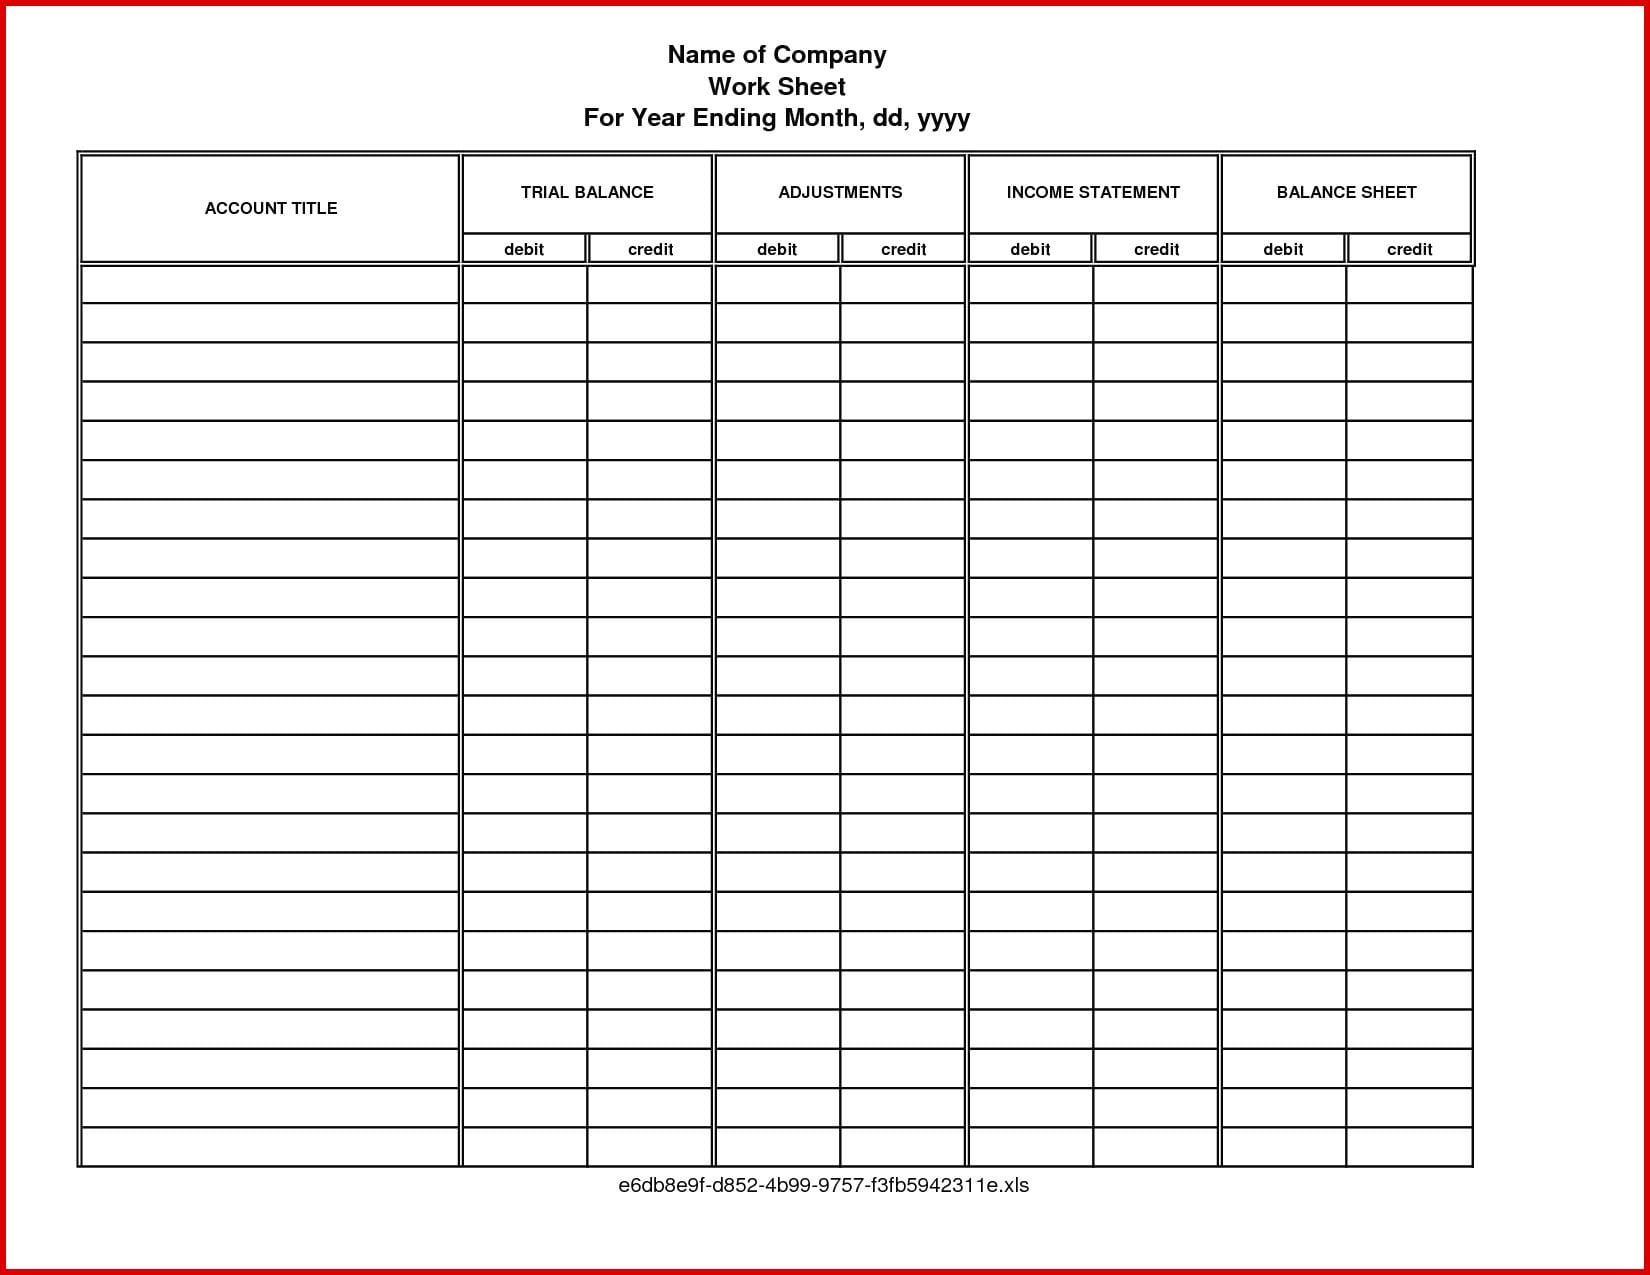 Checkbook Register Worksheet 14 1650X1275  Bibruckerholzde Along With Checkbook Register Worksheet